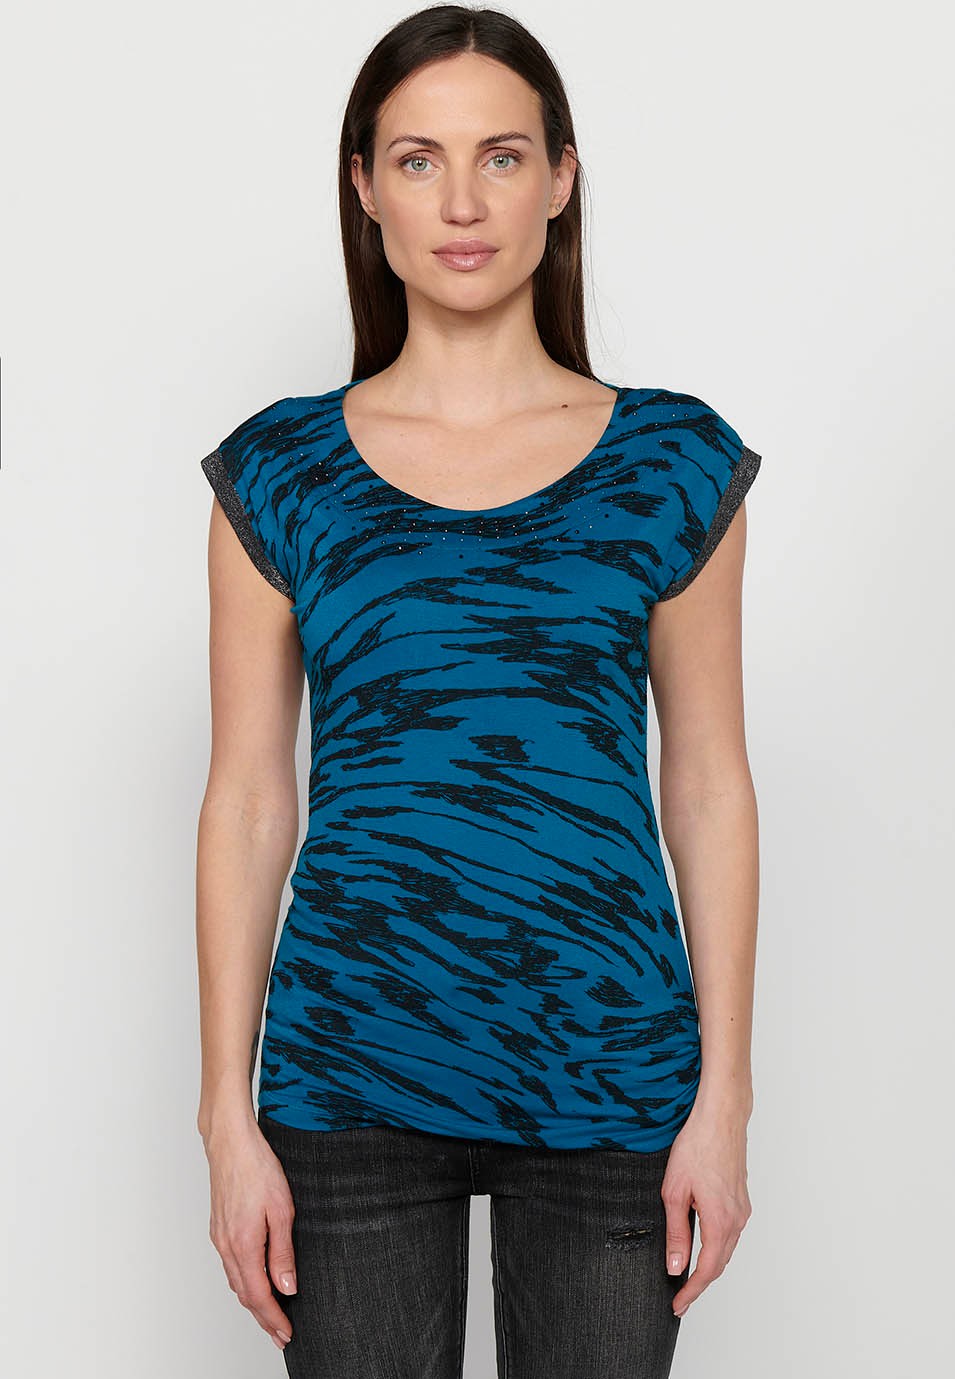 Camiseta sin mangas estampada, cuello redondo, color azul para mujer